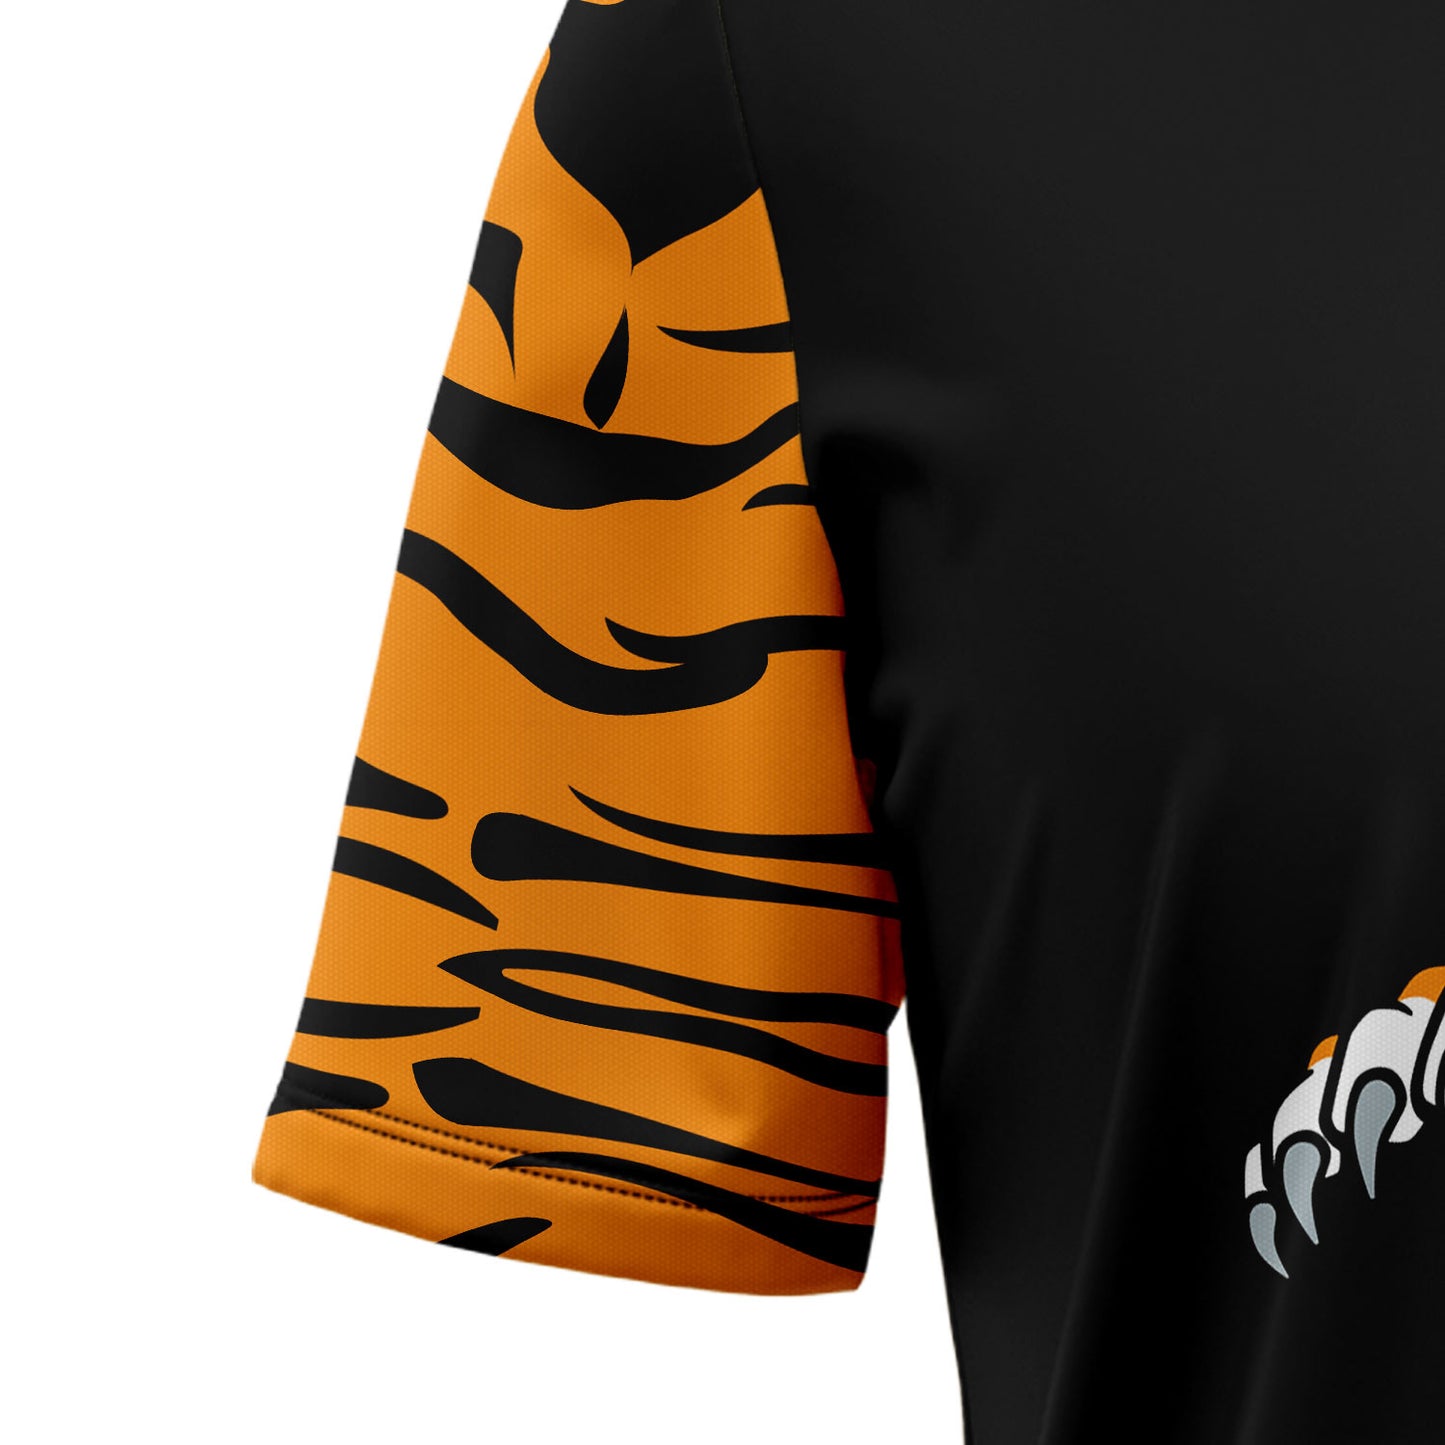 Amazing Tiger HT28705 Hawaiian Shirt